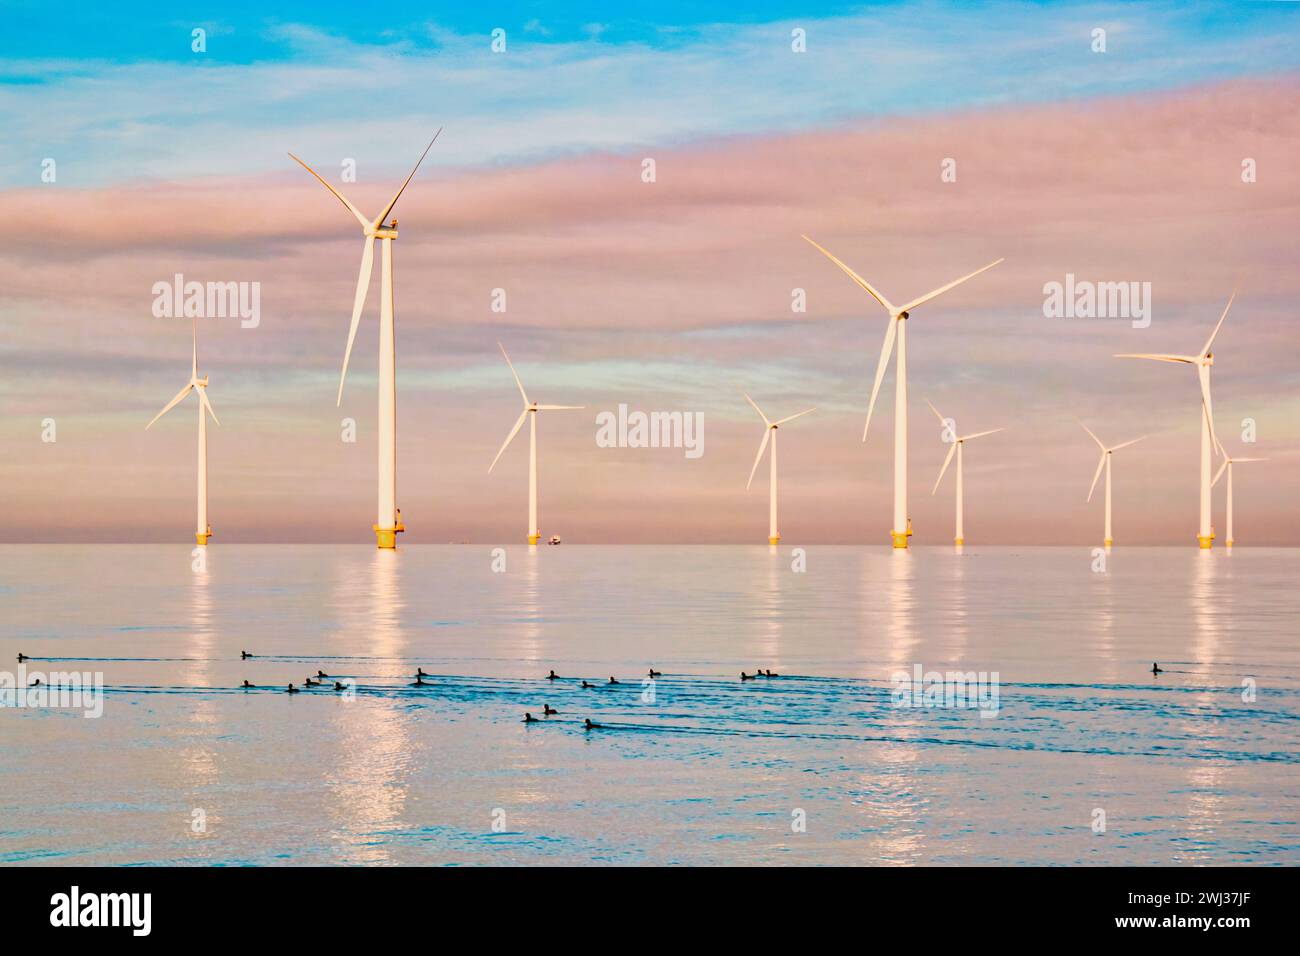 Windmühlen für die Stromerzeugung Niederlande Flevoland, Windturbinenfarm im Meer, Windmühlenfarm für grüne Energie Stockfoto